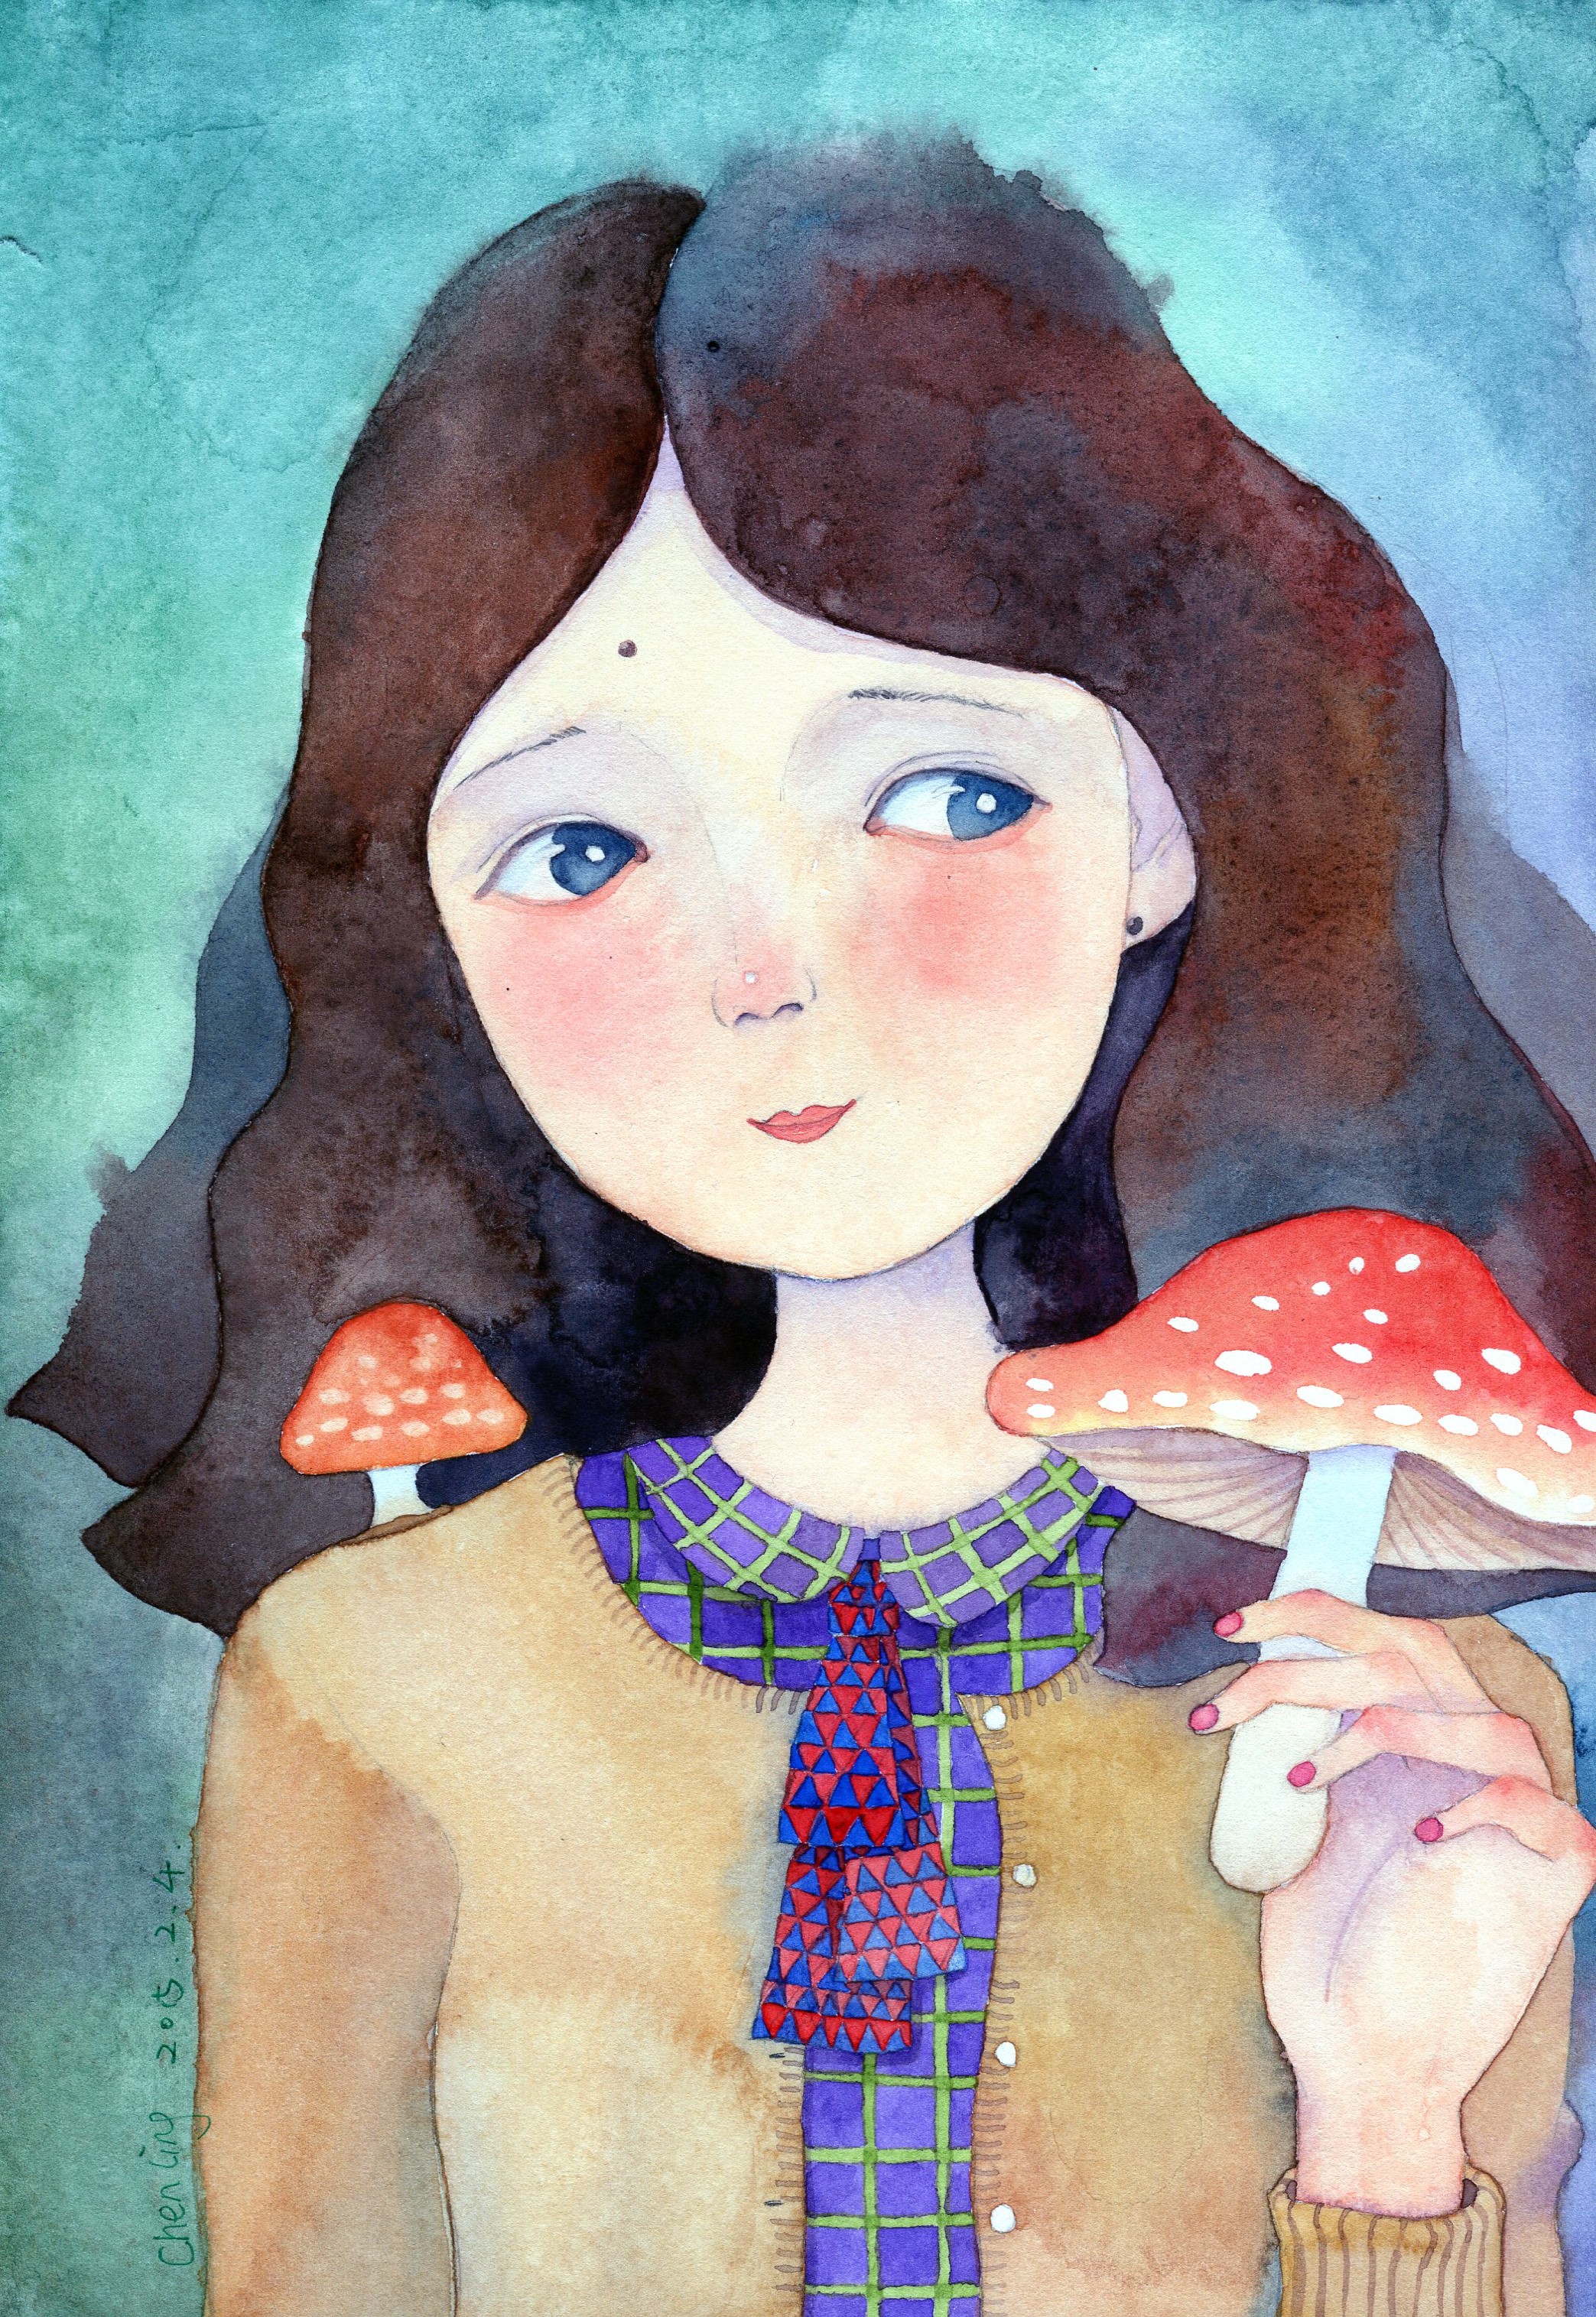 采蘑菇的小姑娘彩铅画图片